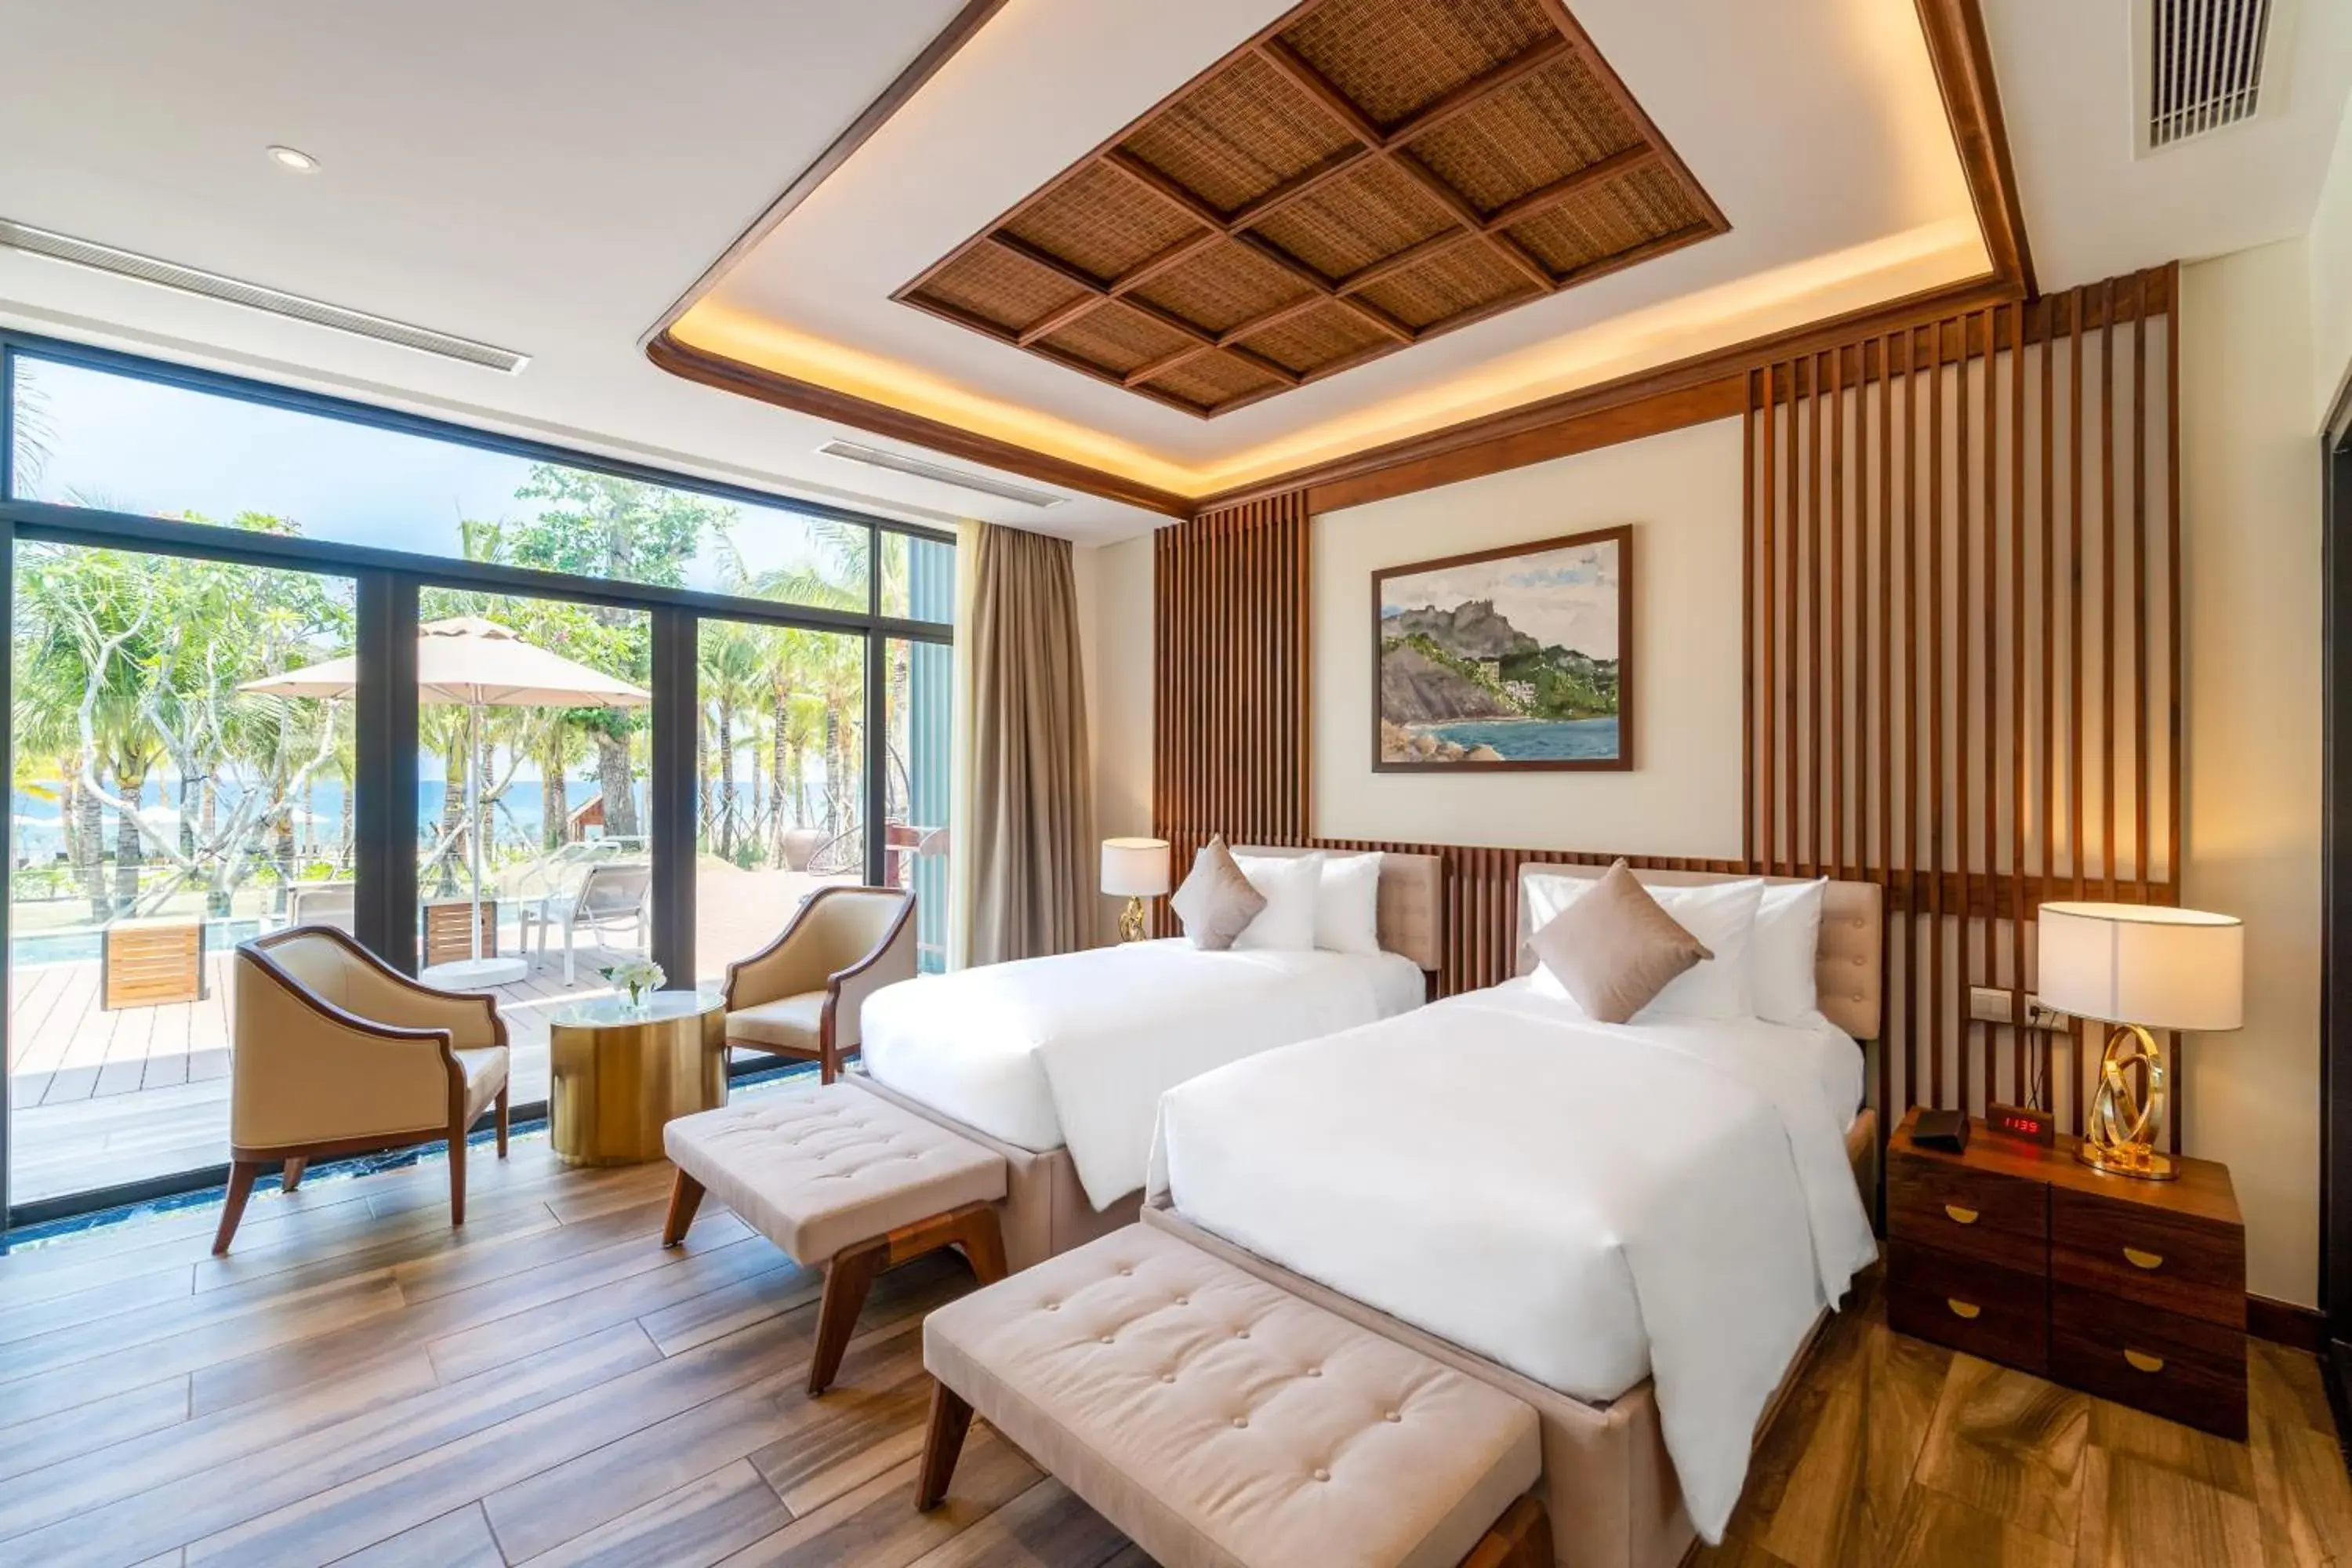 Bedroom in Best Western Premier Sonasea Phu Quoc